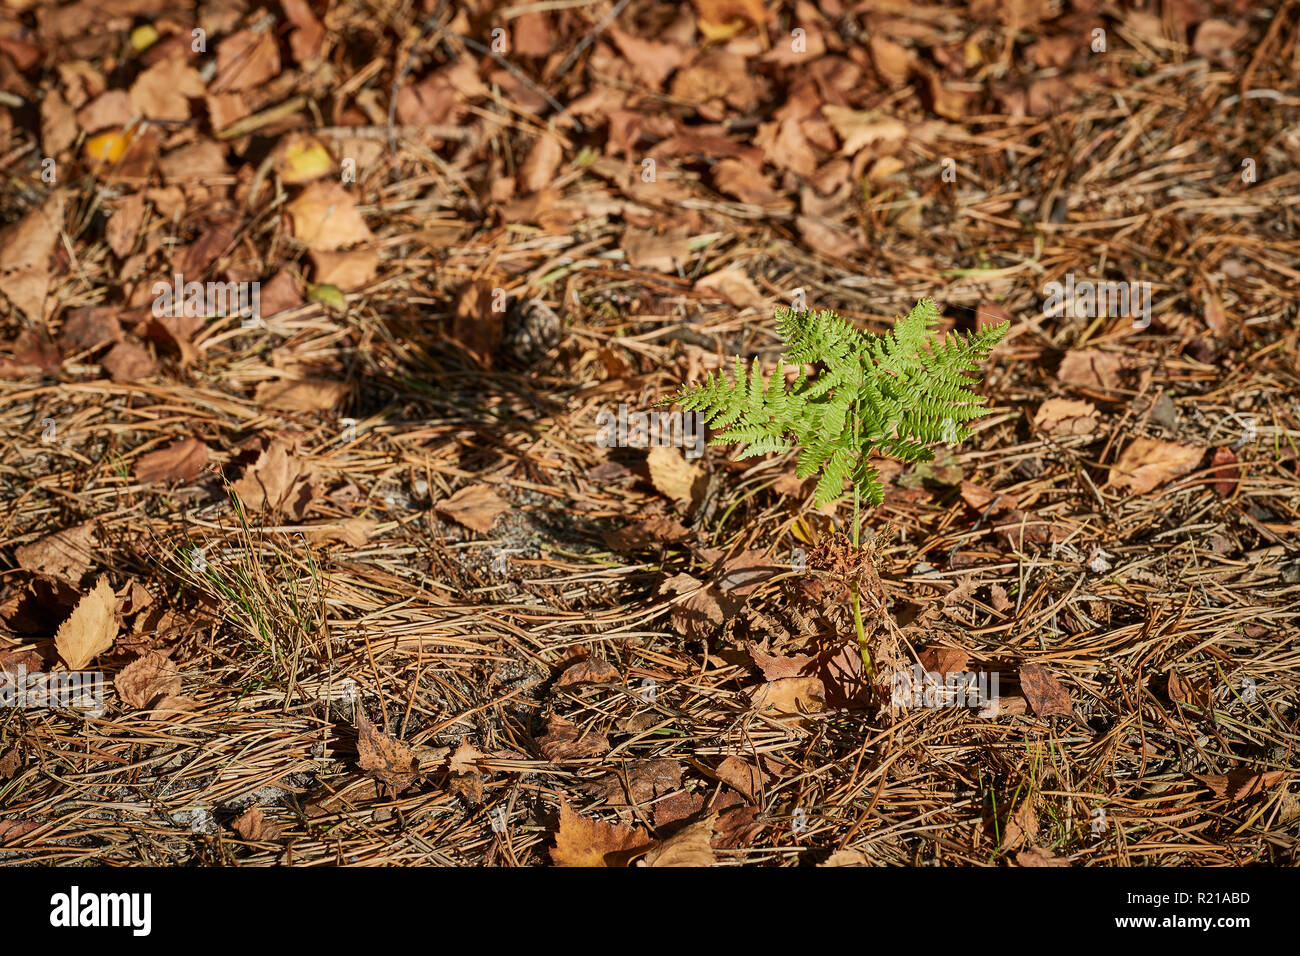 Un unico piccolo fern iniziando a crescere dal suolo della foresta circondato da foglie di colore marrone che sono cadute dagli alberi in autunno Foto Stock